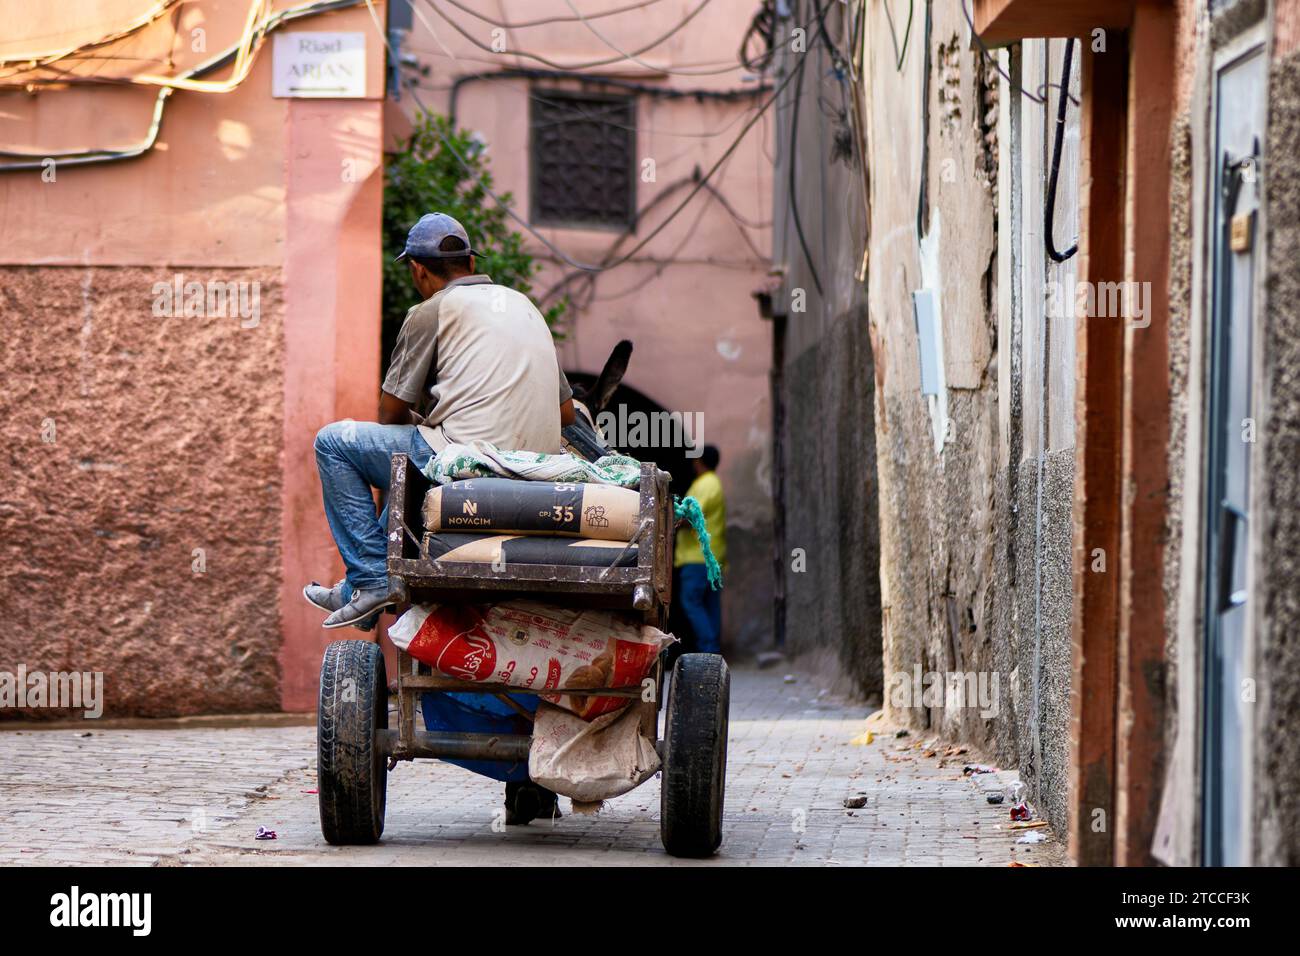 Marrakesch, Marokko: Ein marokkanischer Mann transportiert Betonsäcke auf einem zweirädrigen Wagen, der von einem Esel in einer Marrakesch Medina Straße gezogen wird. Stockfoto